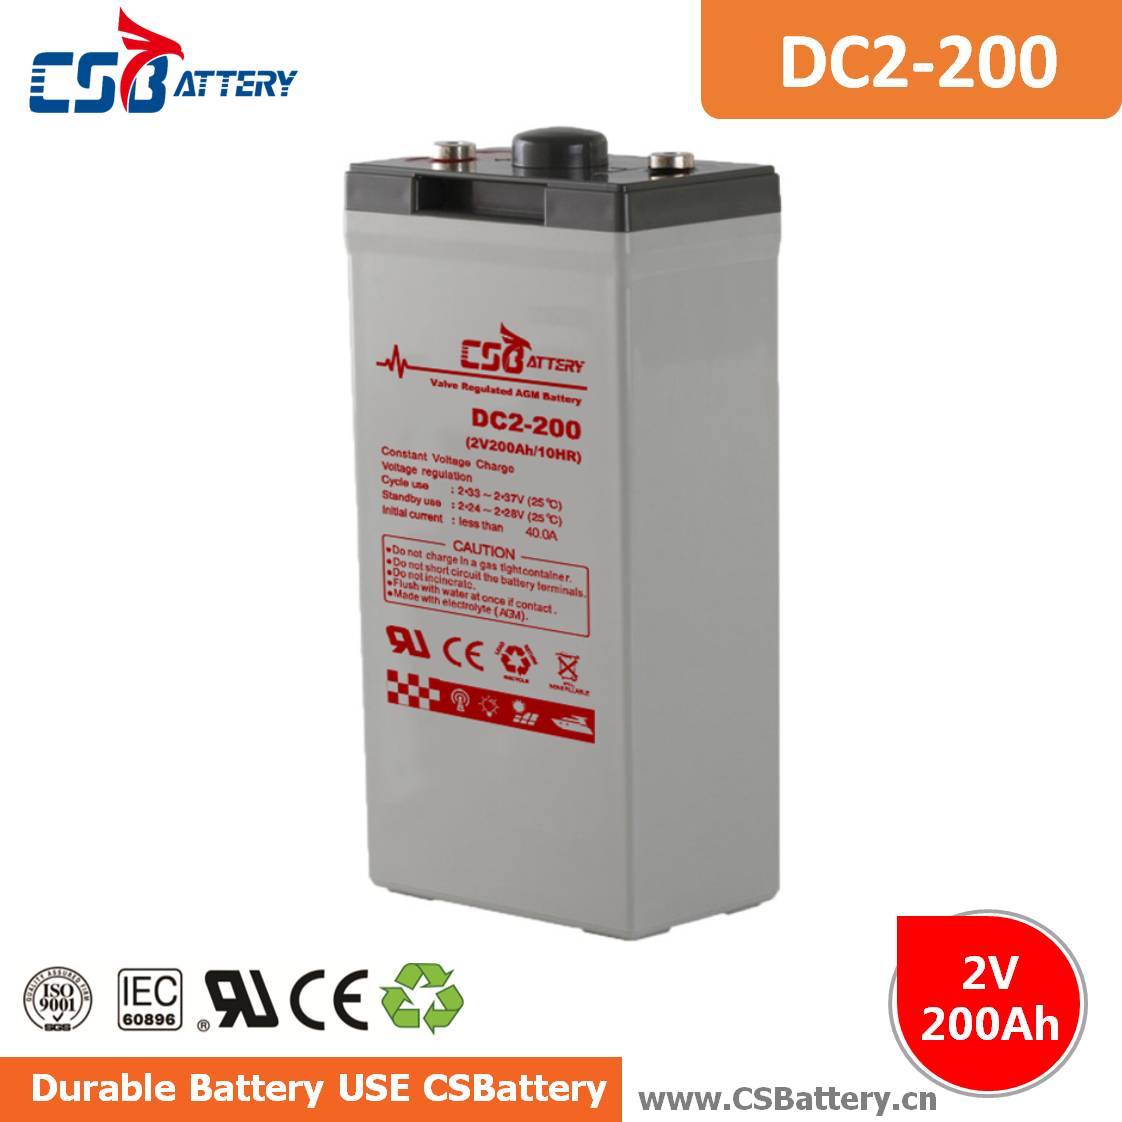 DC2-200 2V 200Ah Deep Cycle AGM Battery